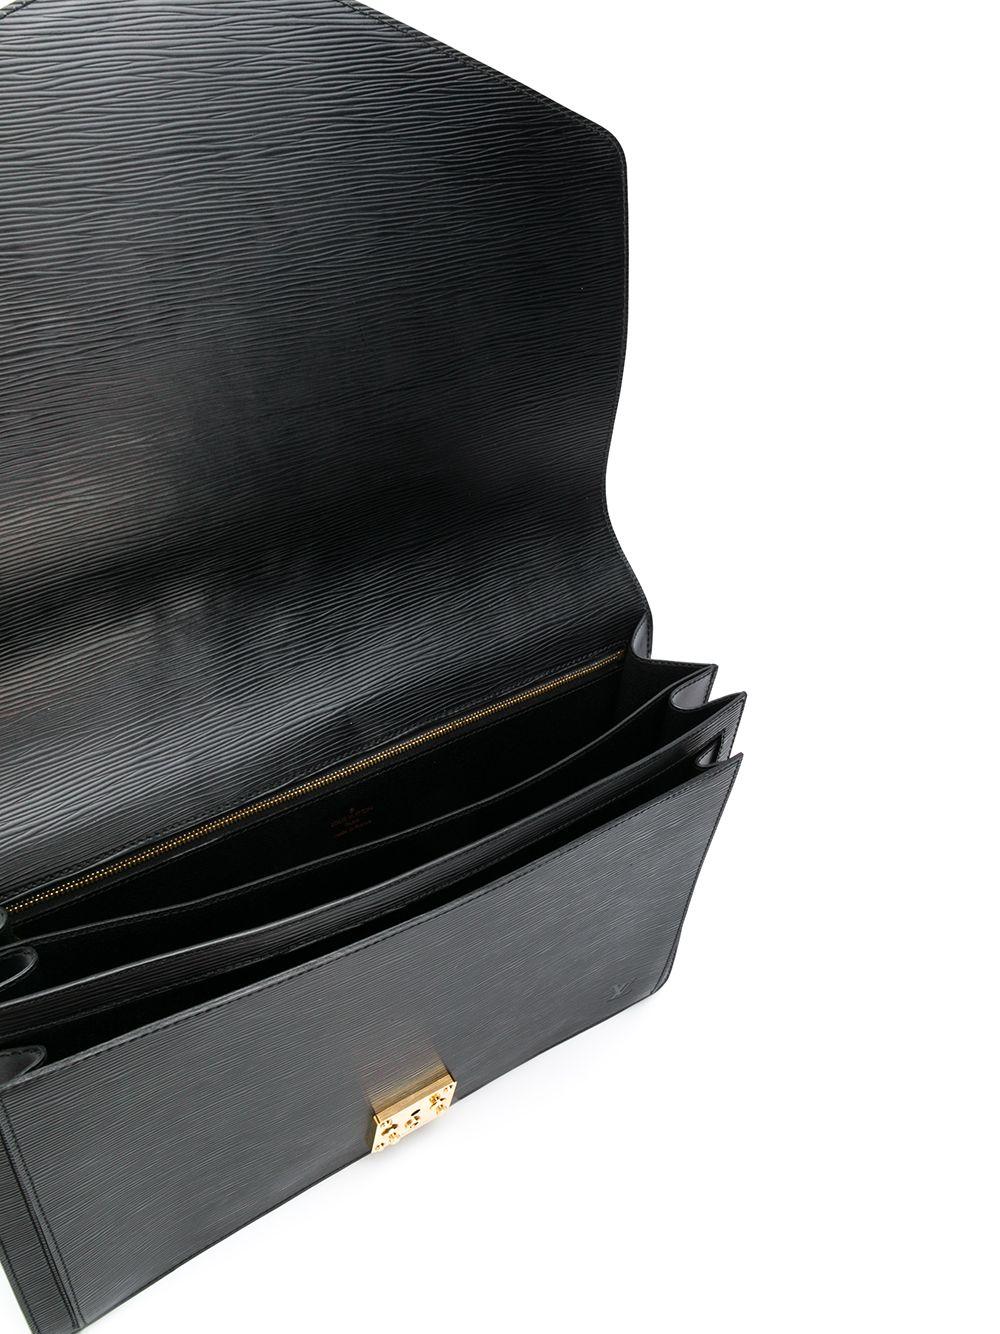 Men's Louis Vuitton Black Epi Leather Big Size Senateur Briefcase